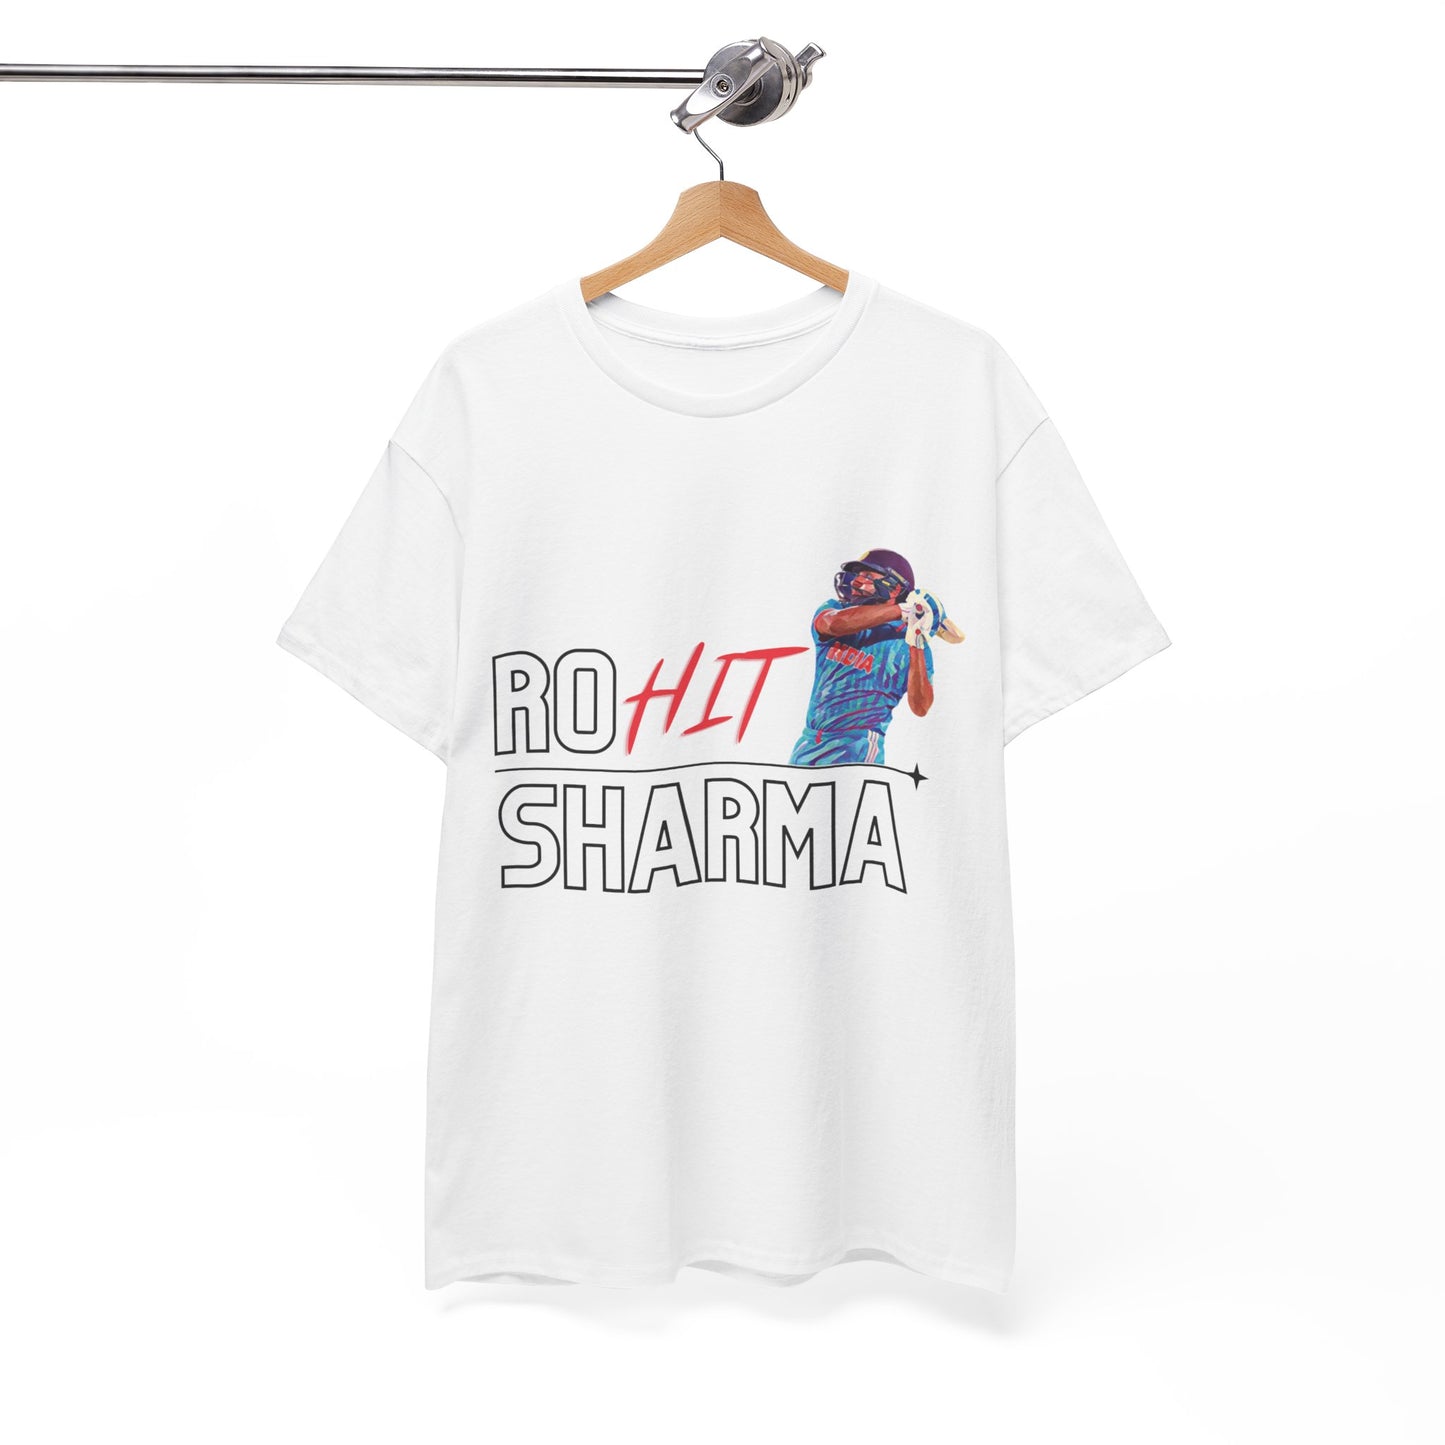 Ro-HIT Sharma - Unisex Heavy Cotton Tee